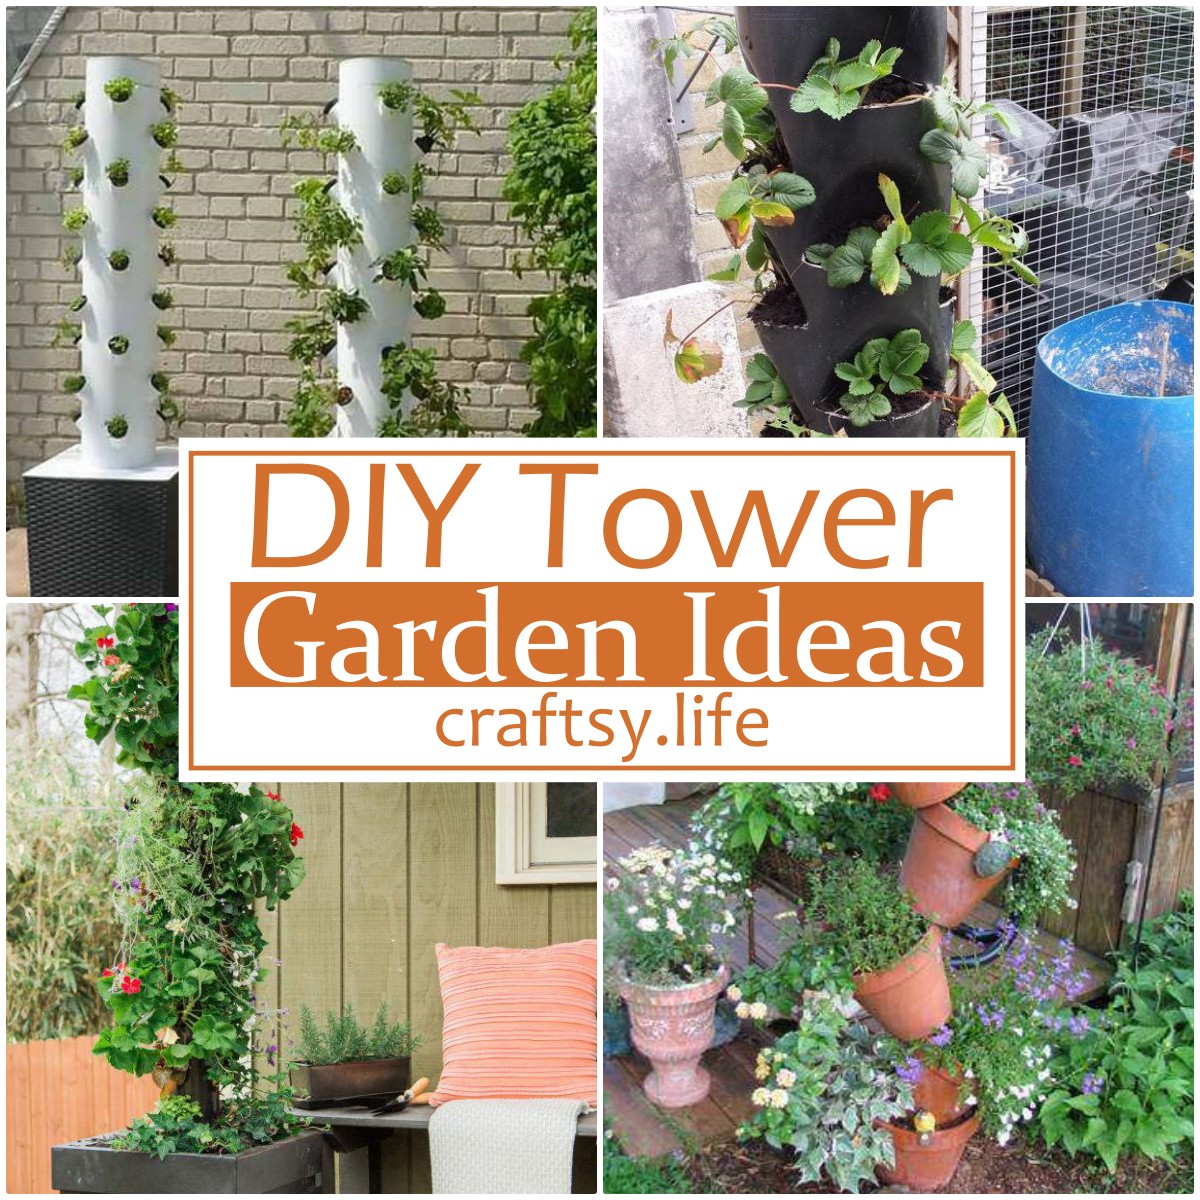 DIY Tower Garden Ideas